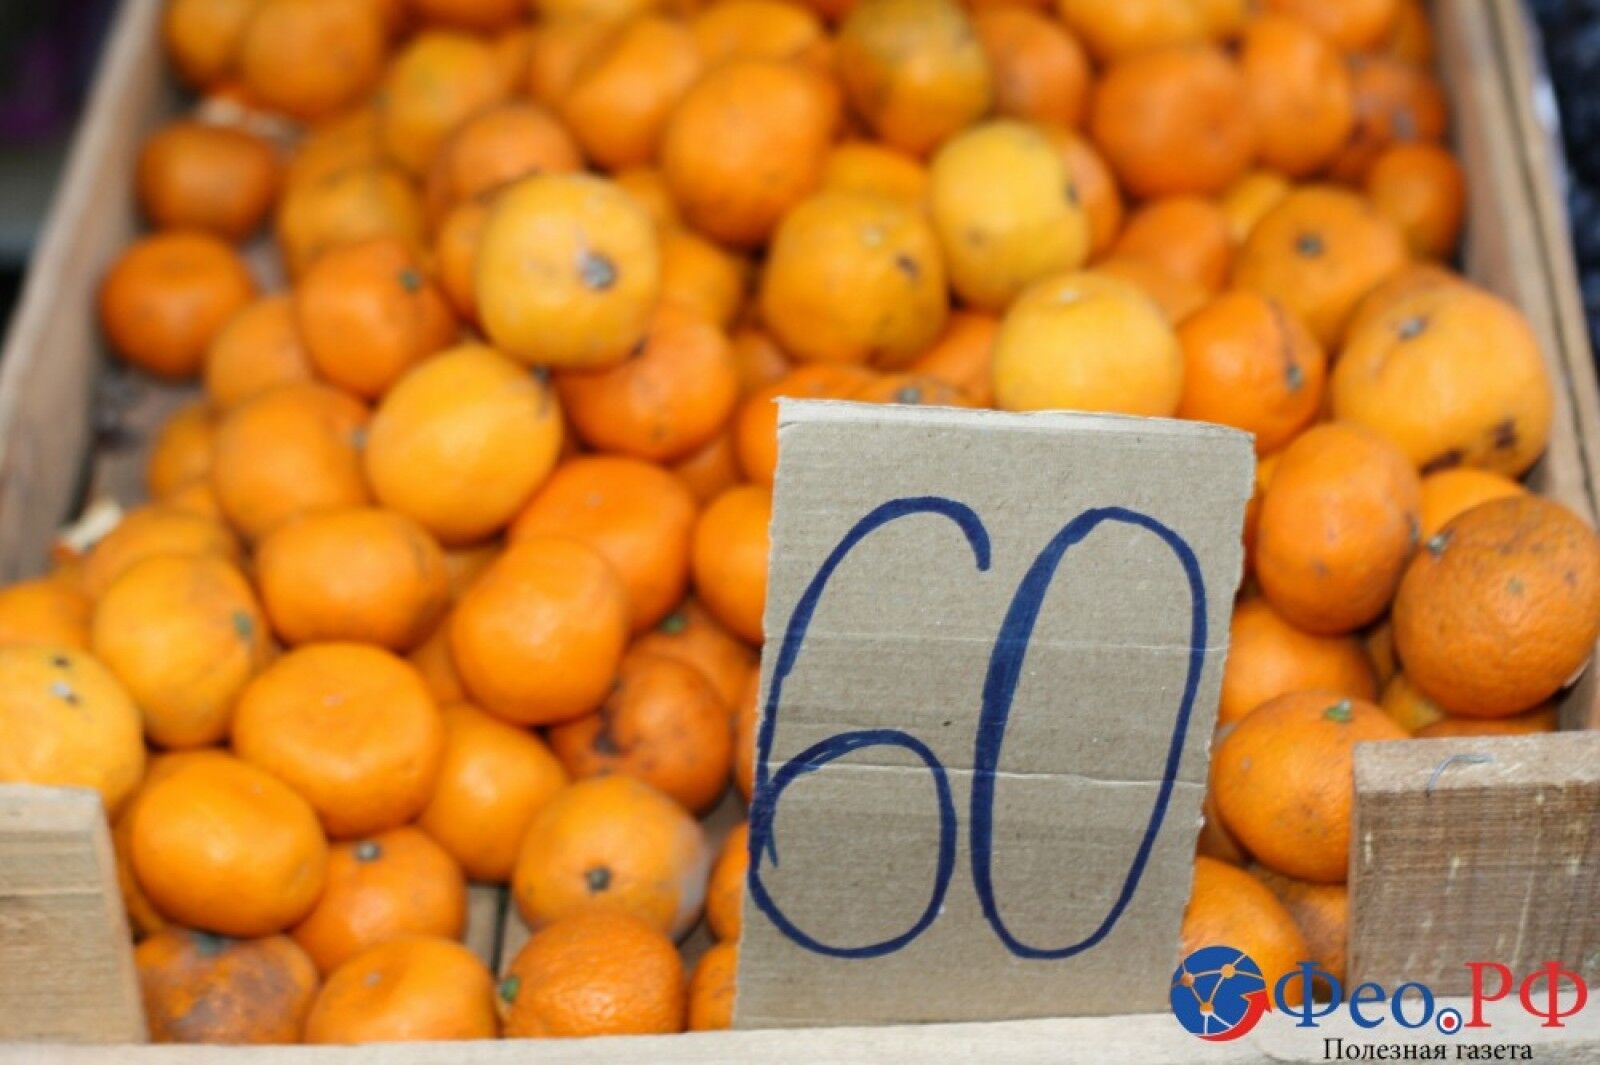 Закончились деньги: в сети показали заоблачные цены на продукты в Крыму